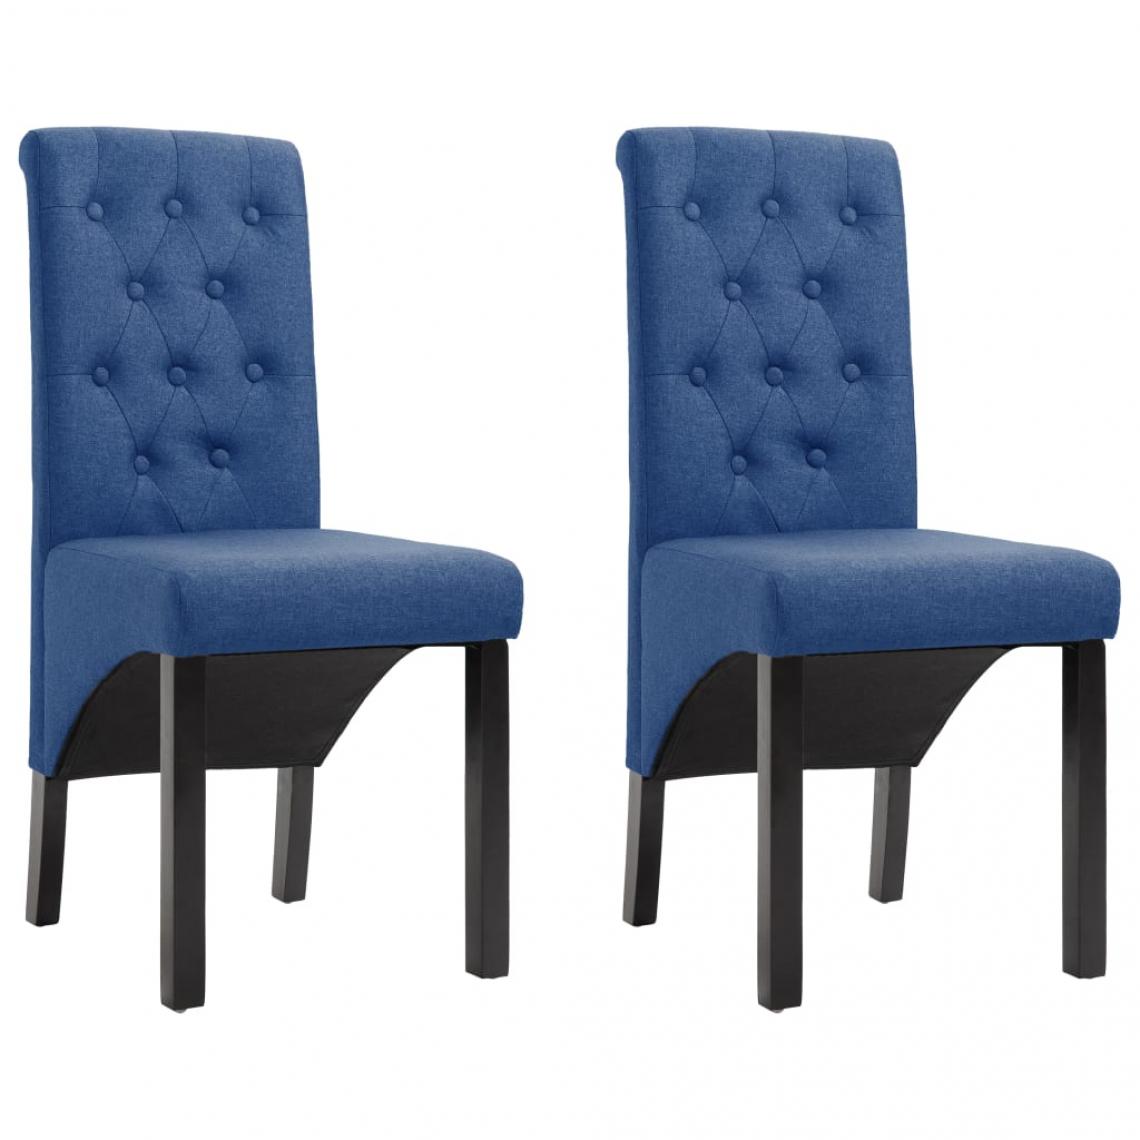 Decoshop26 - Lot de 2 chaises de salle à manger cuisine design classique tissu bleu CDS020234 - Chaises